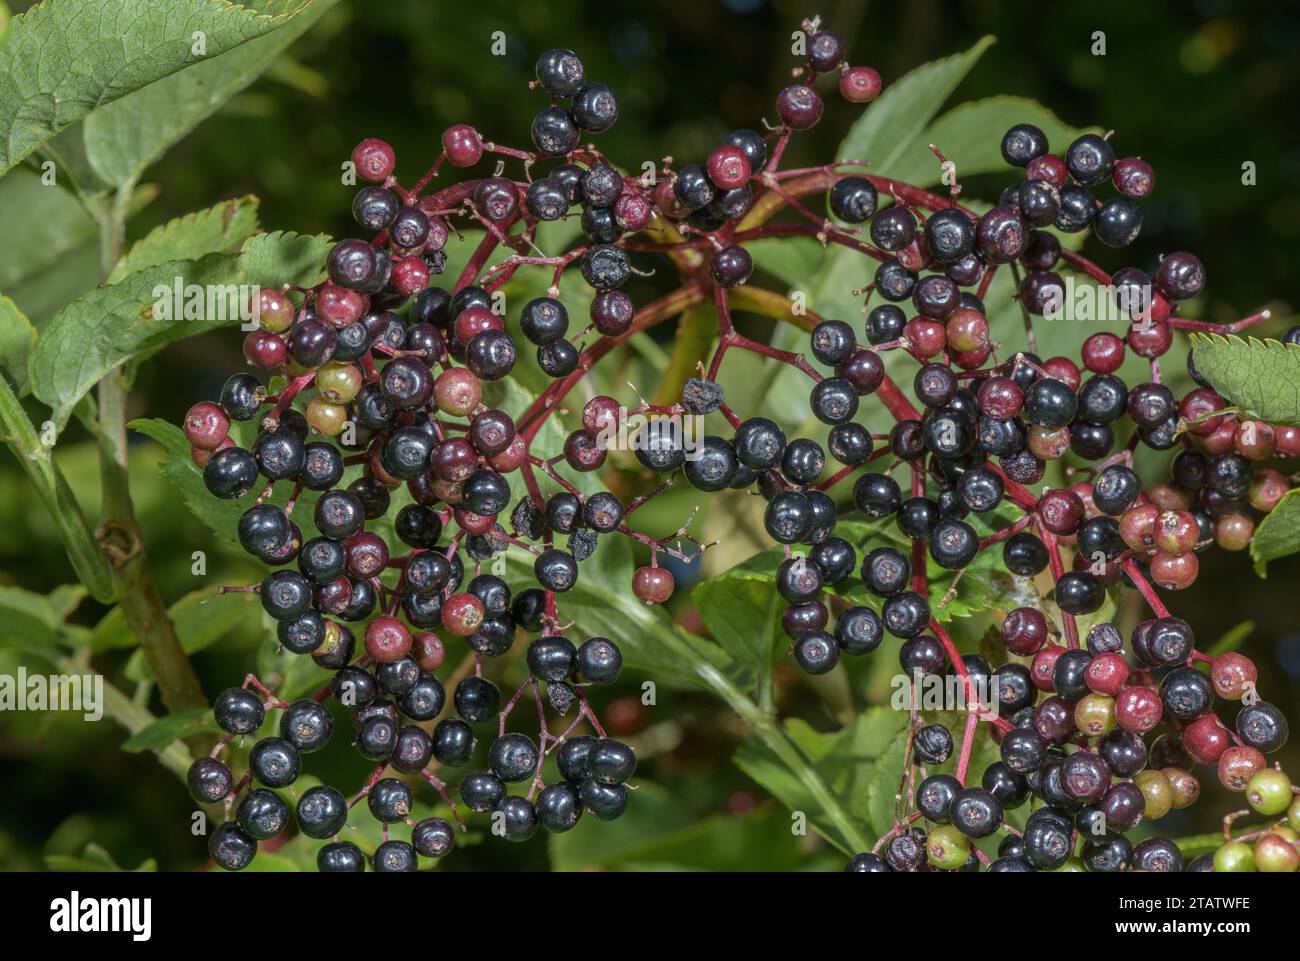 Elder, Sambucus nigra, with ripe elderberries in hedge. Stock Photo